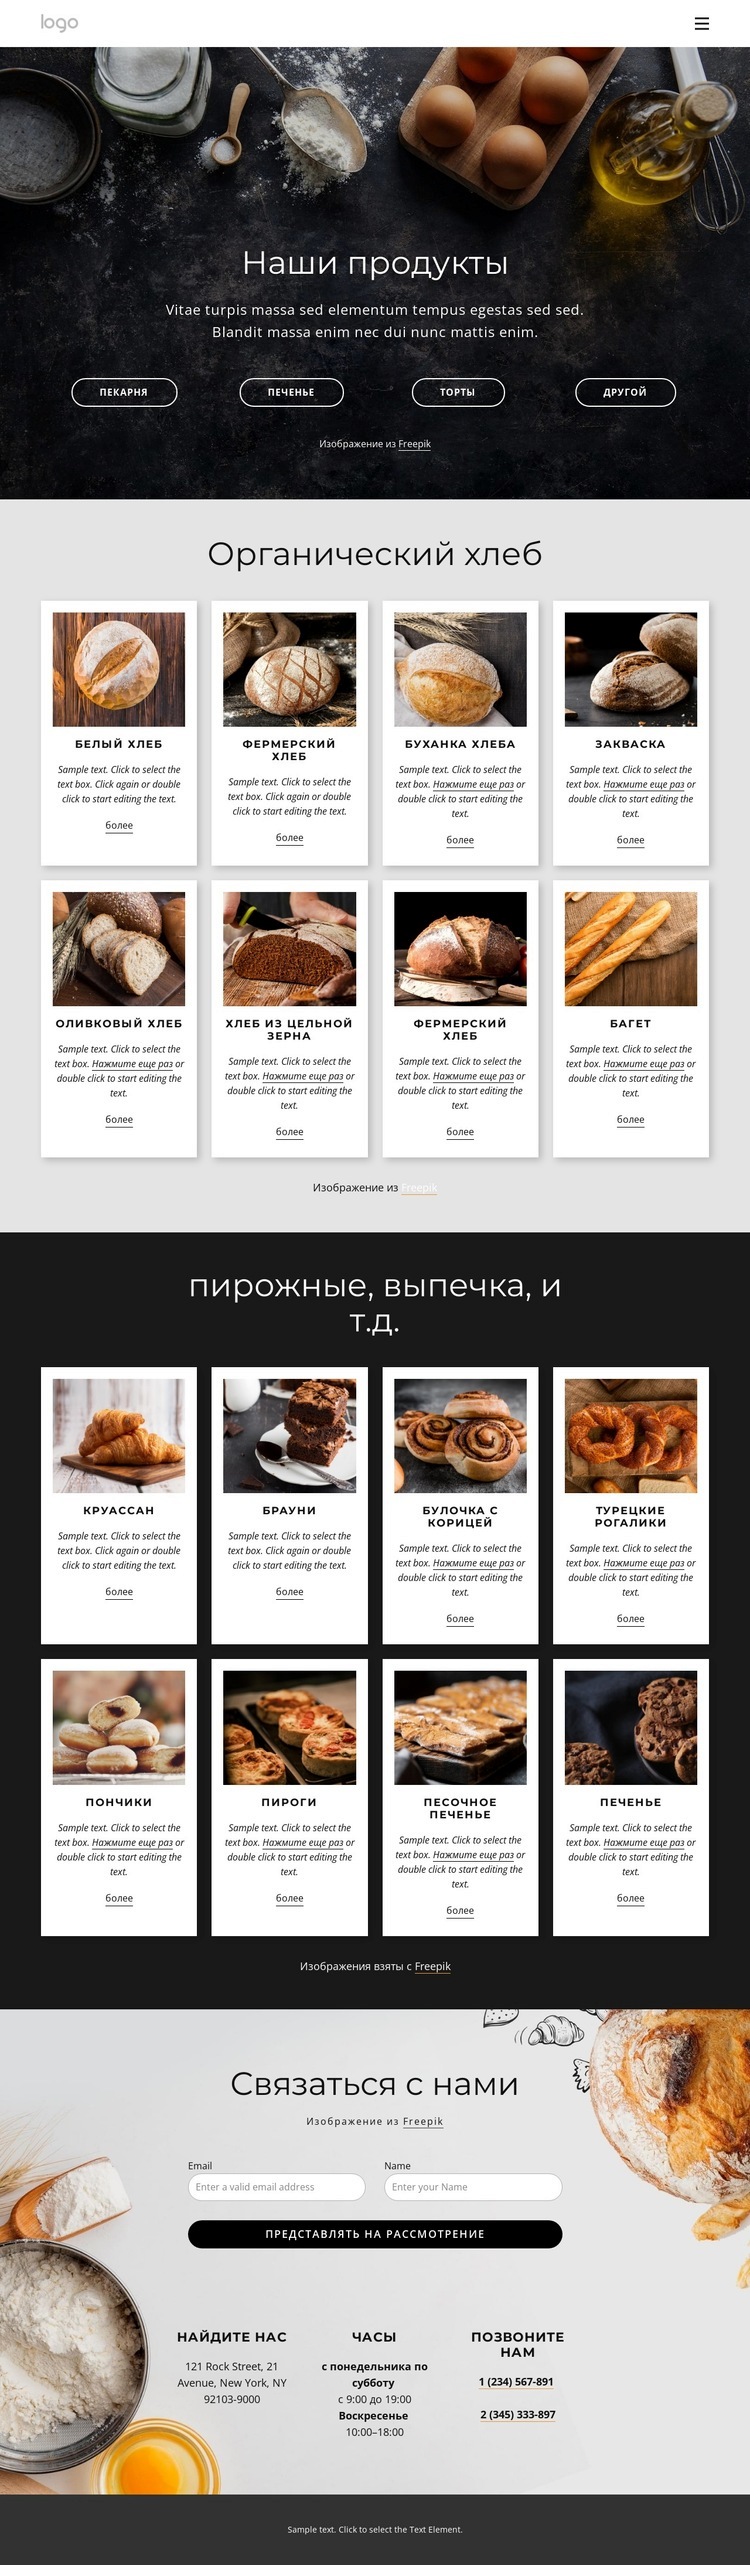 Меню органического хлеба Дизайн сайта